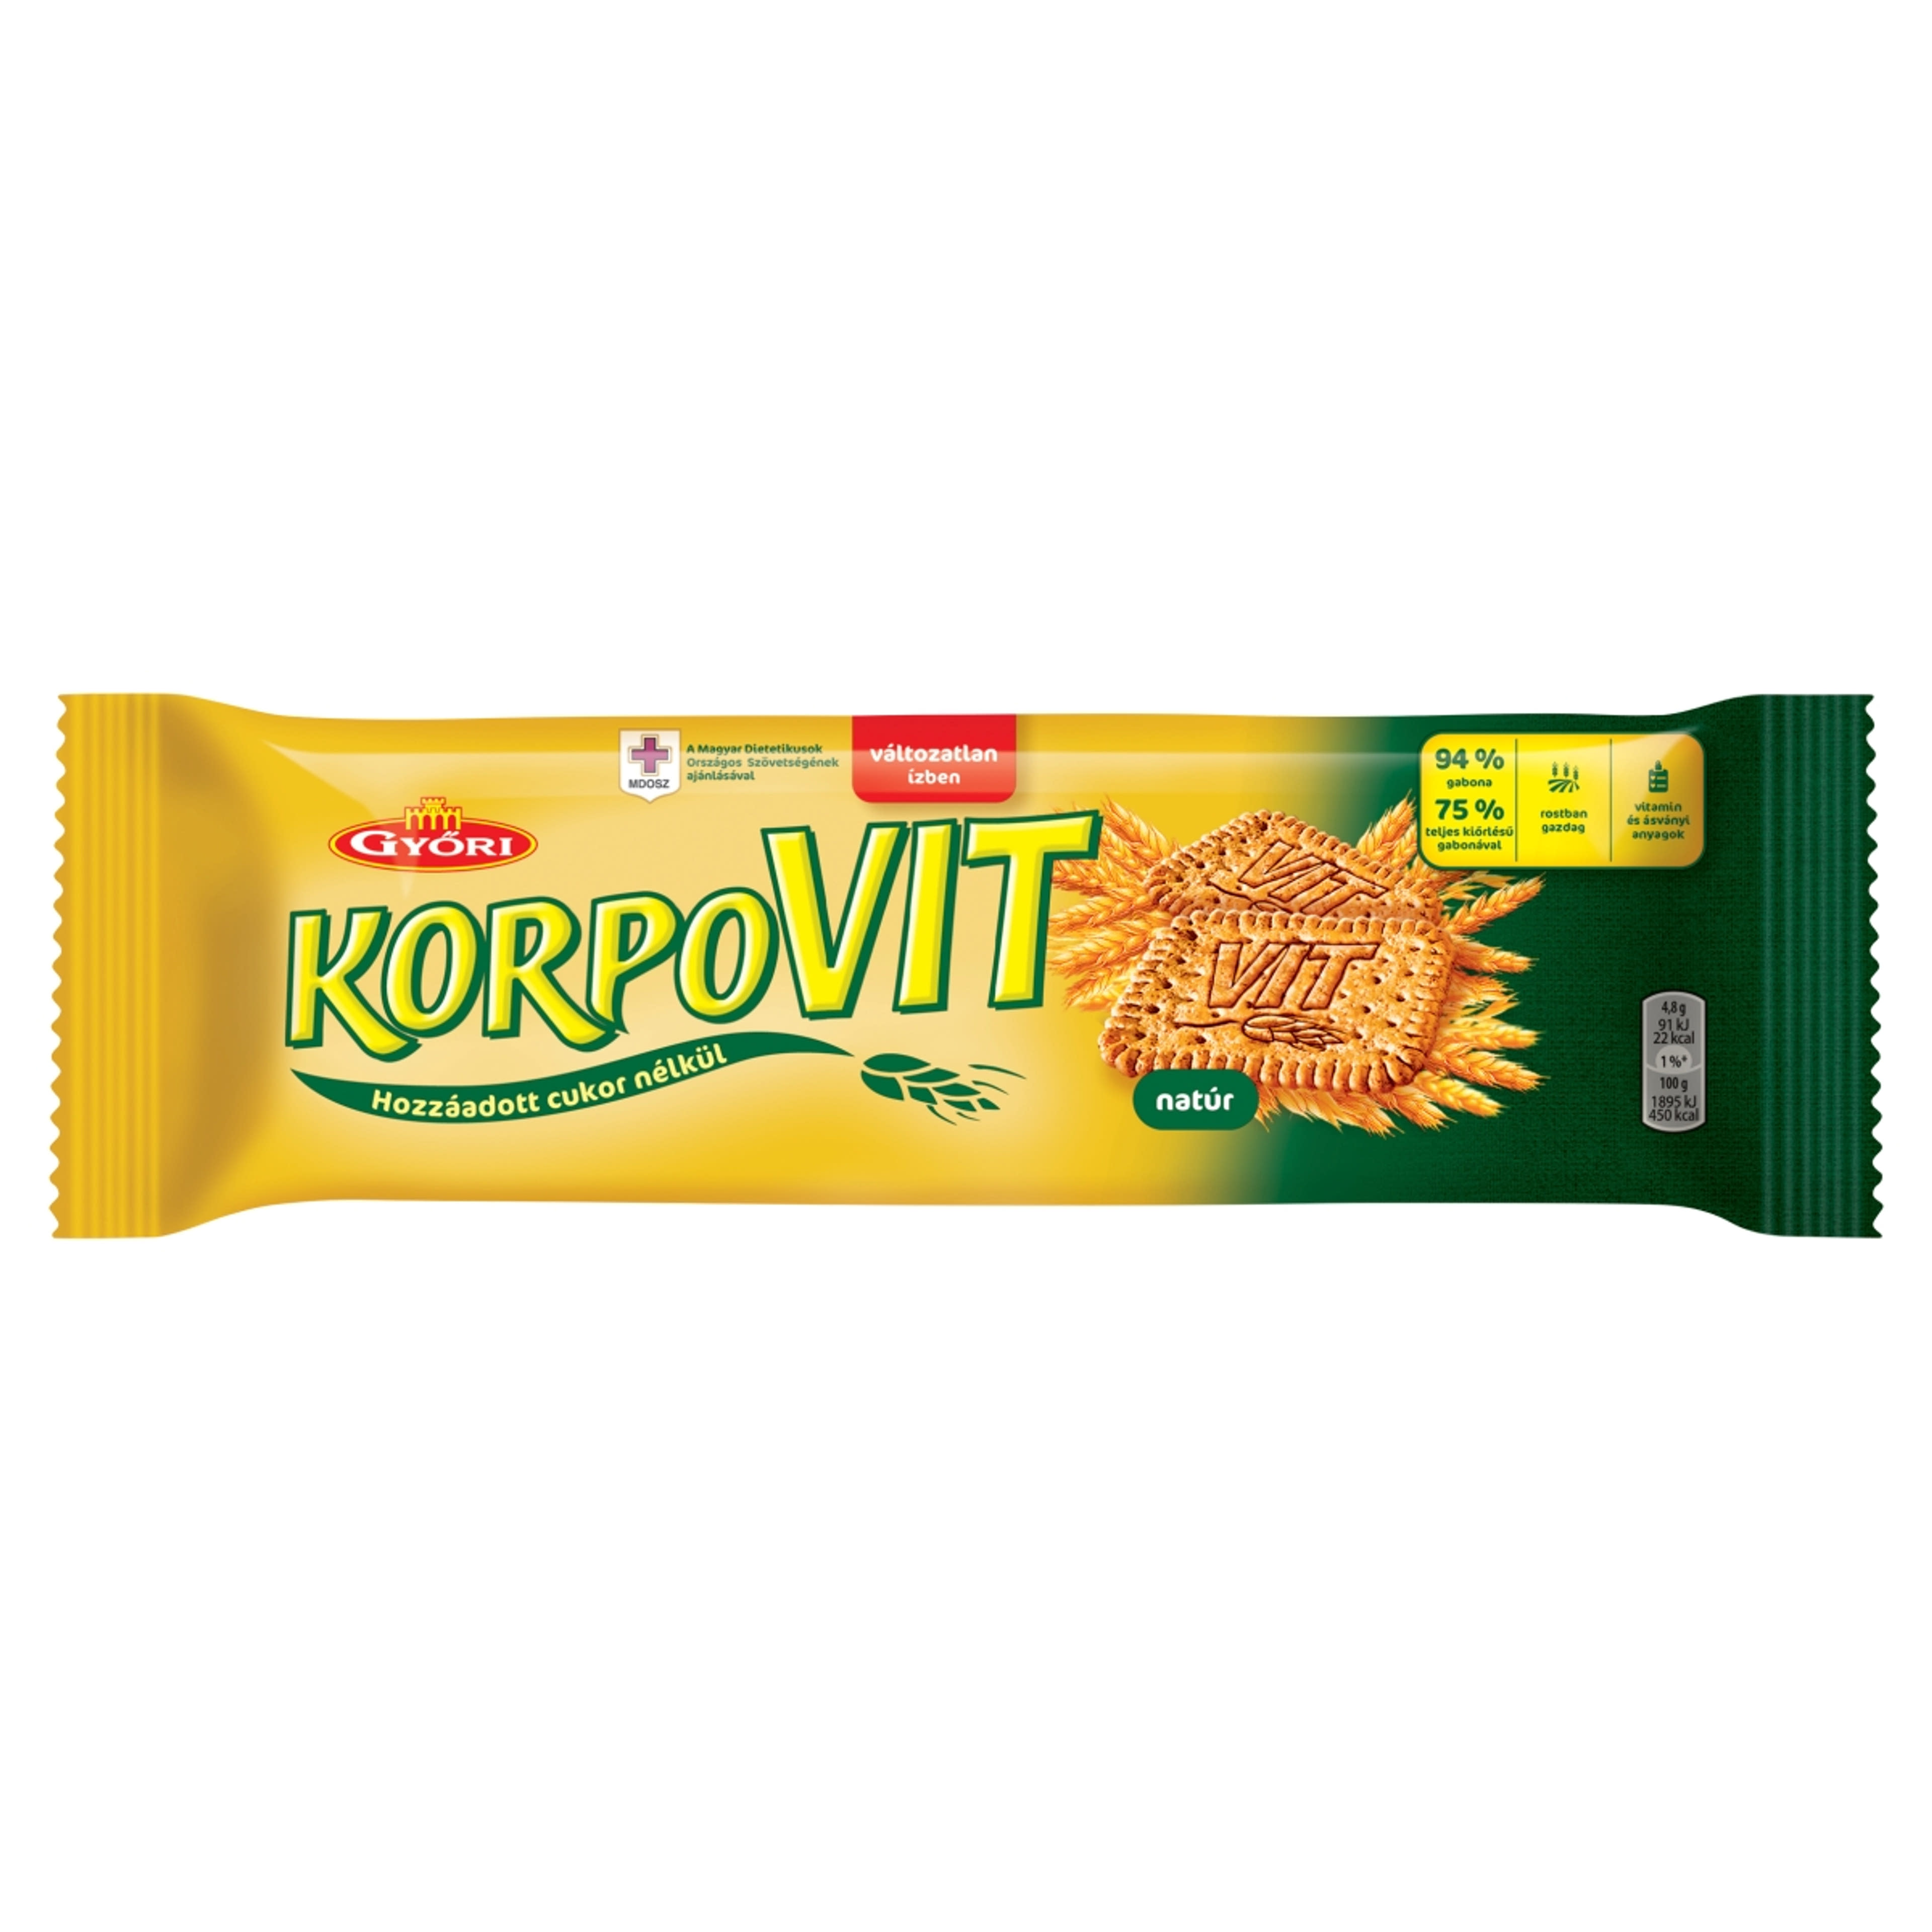 Győri korpovit keksz - 174 g-1